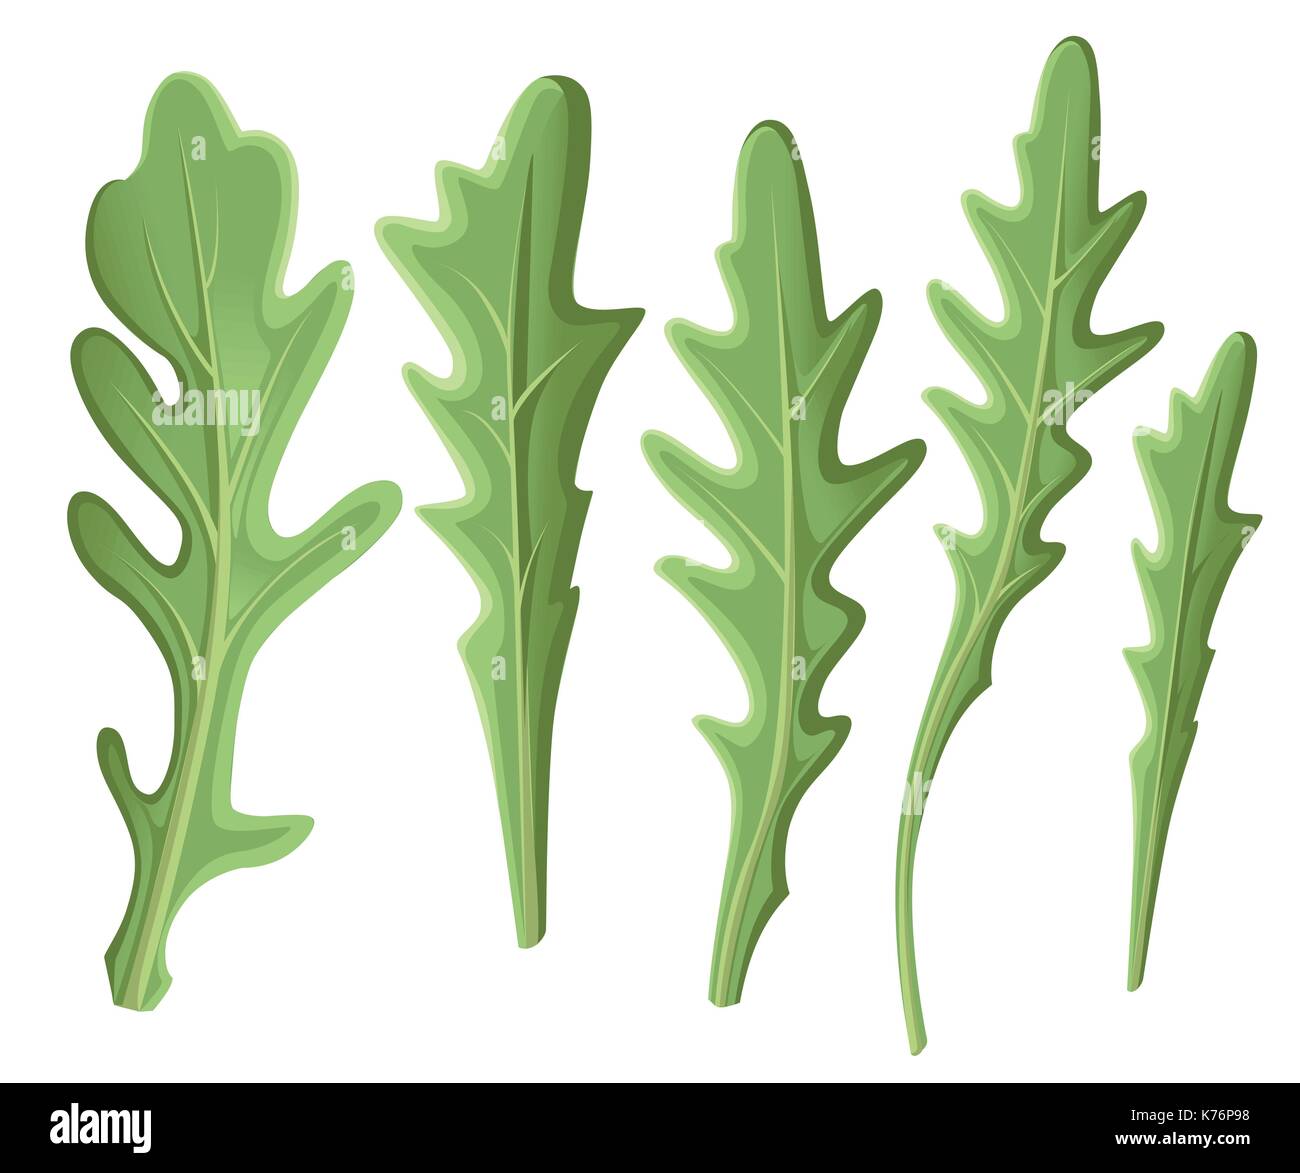 Conjunto de rúcula rúcula, ensalada de rúcula frescas hojas verdes y esboza aislados sobre fondo blanco. vector ilustración dibujada a mano y la página web. Ilustración del Vector